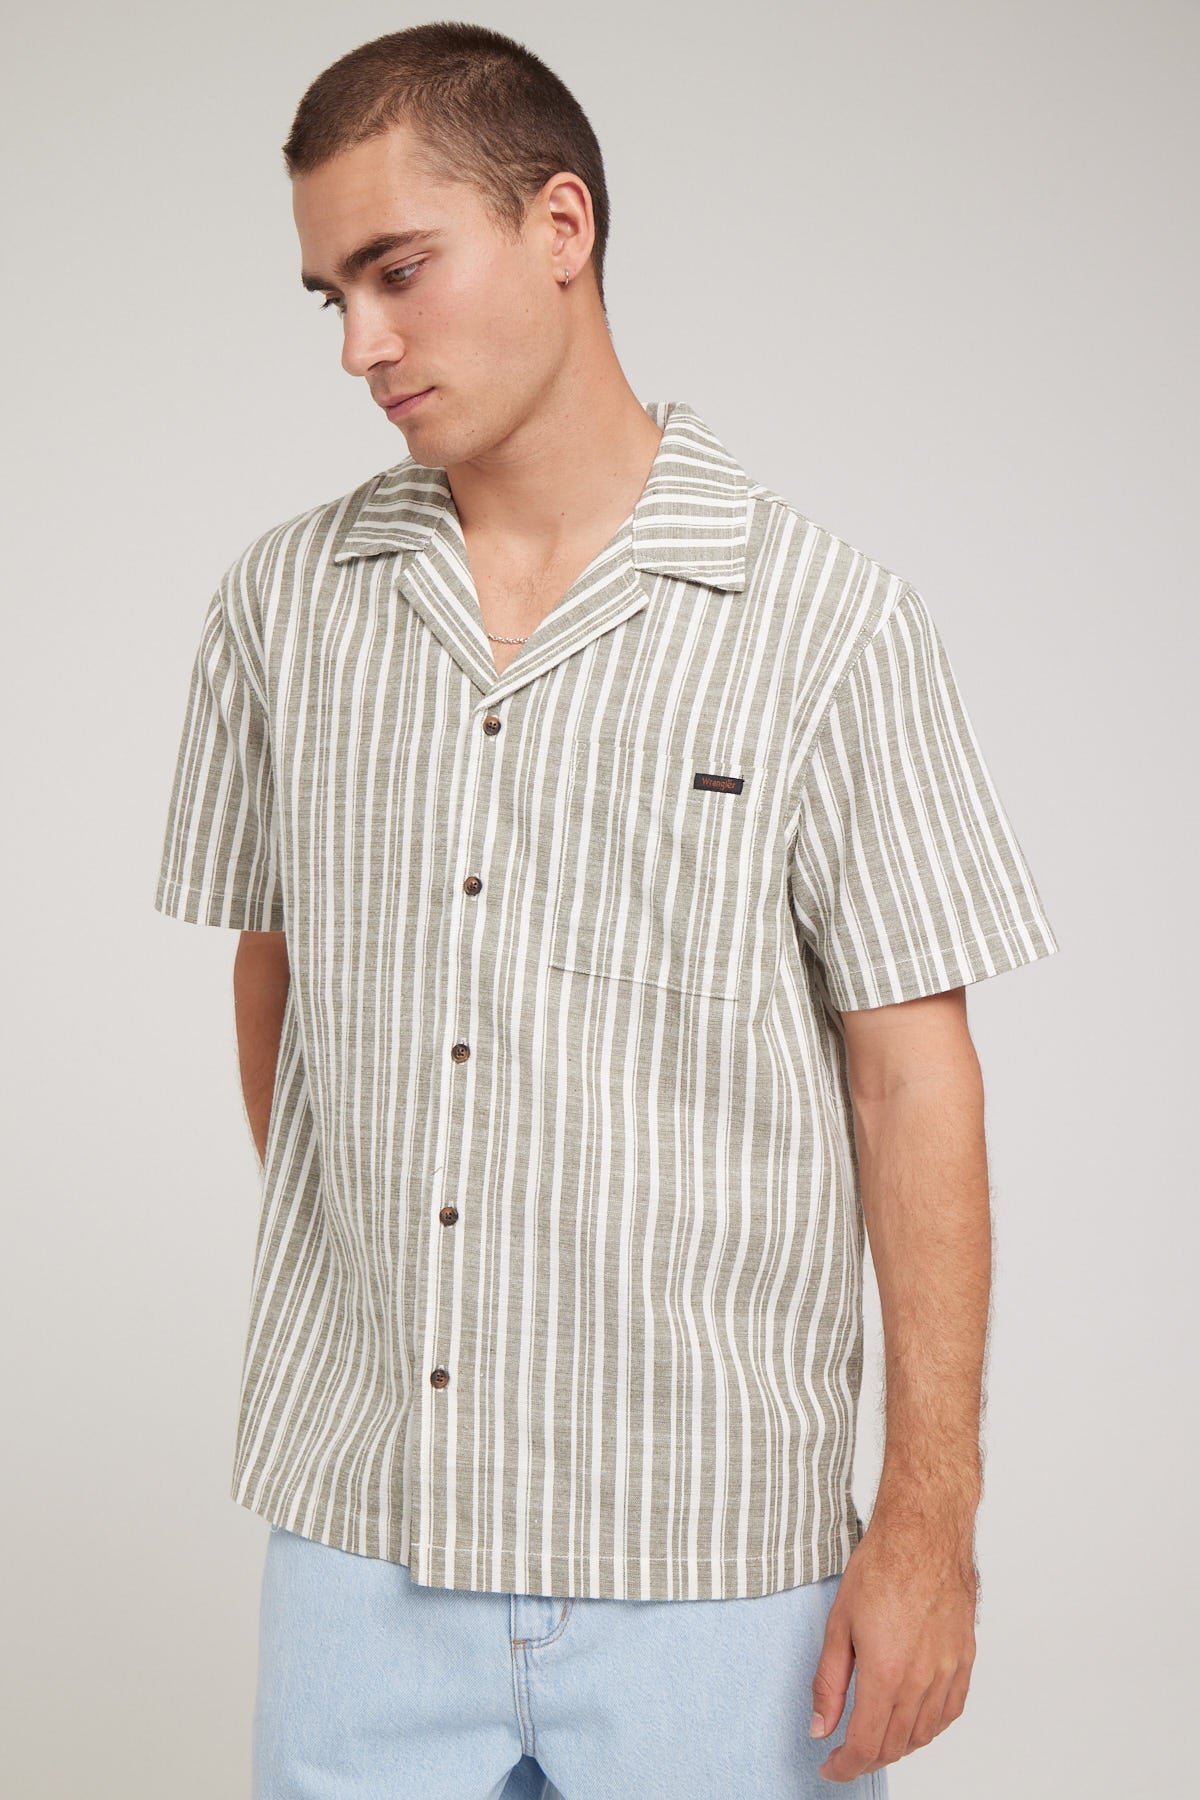 Wrangler Resort Shirt Sage Stripe